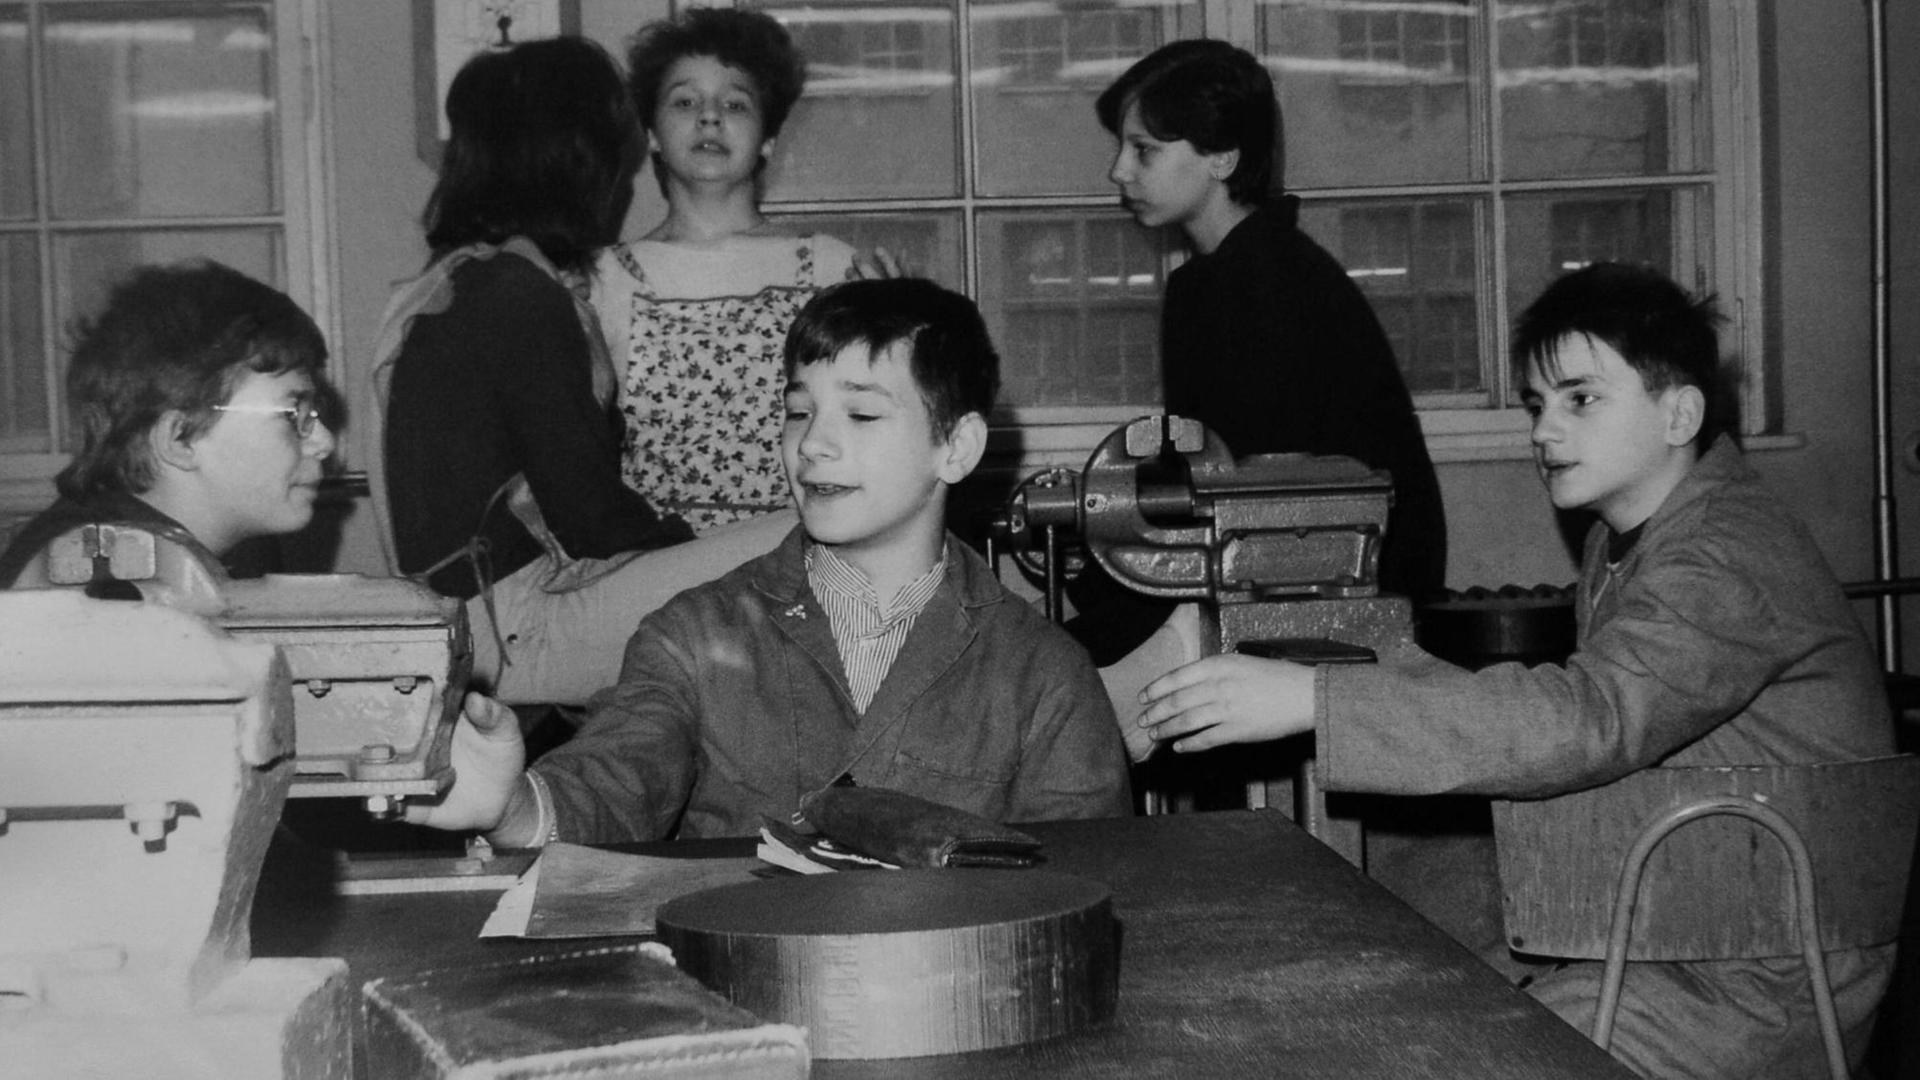 Schulalltag in der DDR - Schüler während des Unterrichtsfach 'Produktive Arbeit' (praktische und theoretische Arbeiten in verschiedenen Betrieben in der DDR als Berufsvorbereitung) in einem Betrieb in Ost-Berlin um 1985.